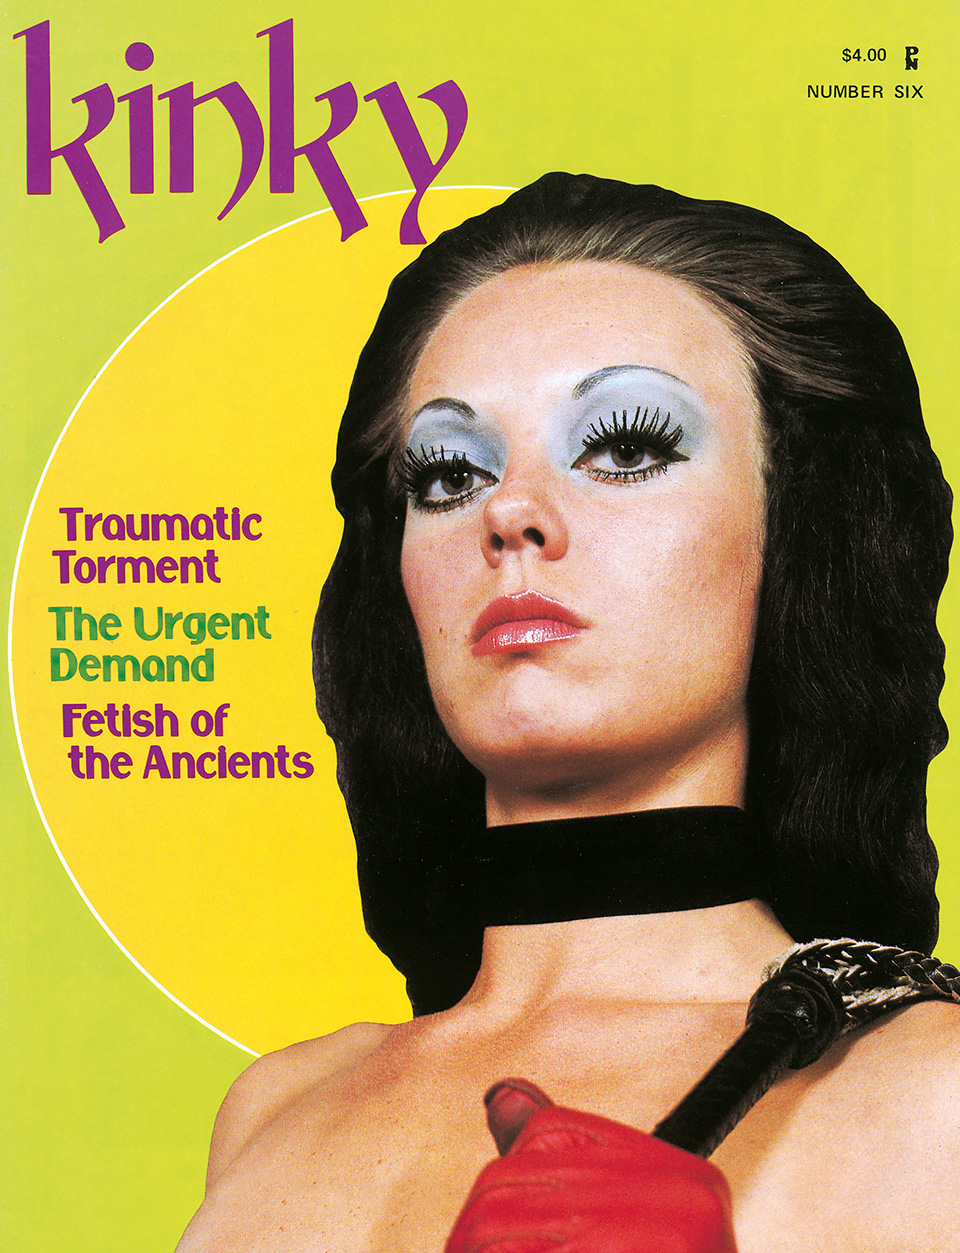 Kinky, 1975